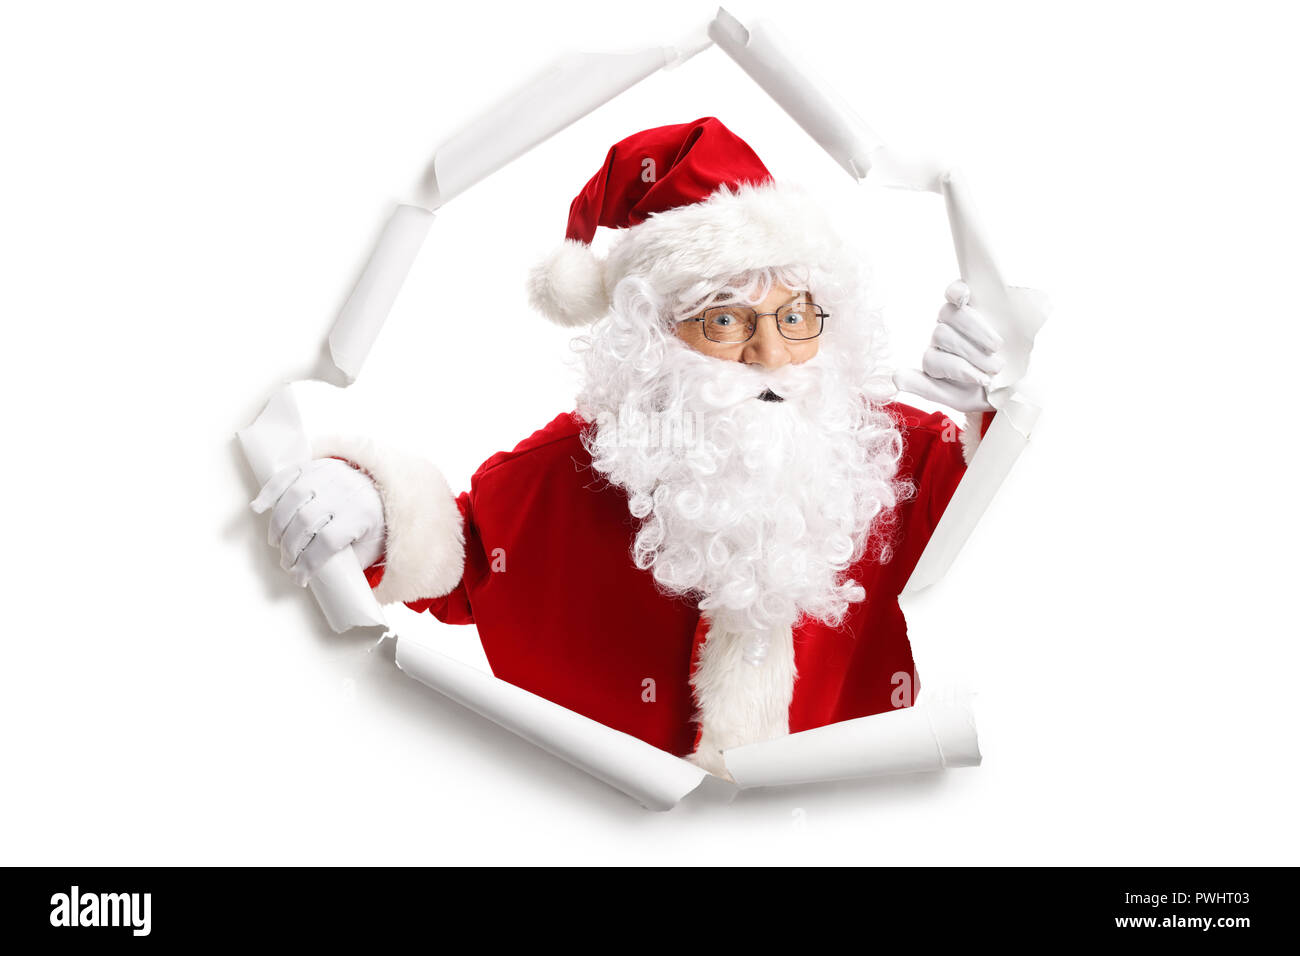 Santa Claus qui sortent d'un trou papier isolé sur fond blanc Banque D'Images